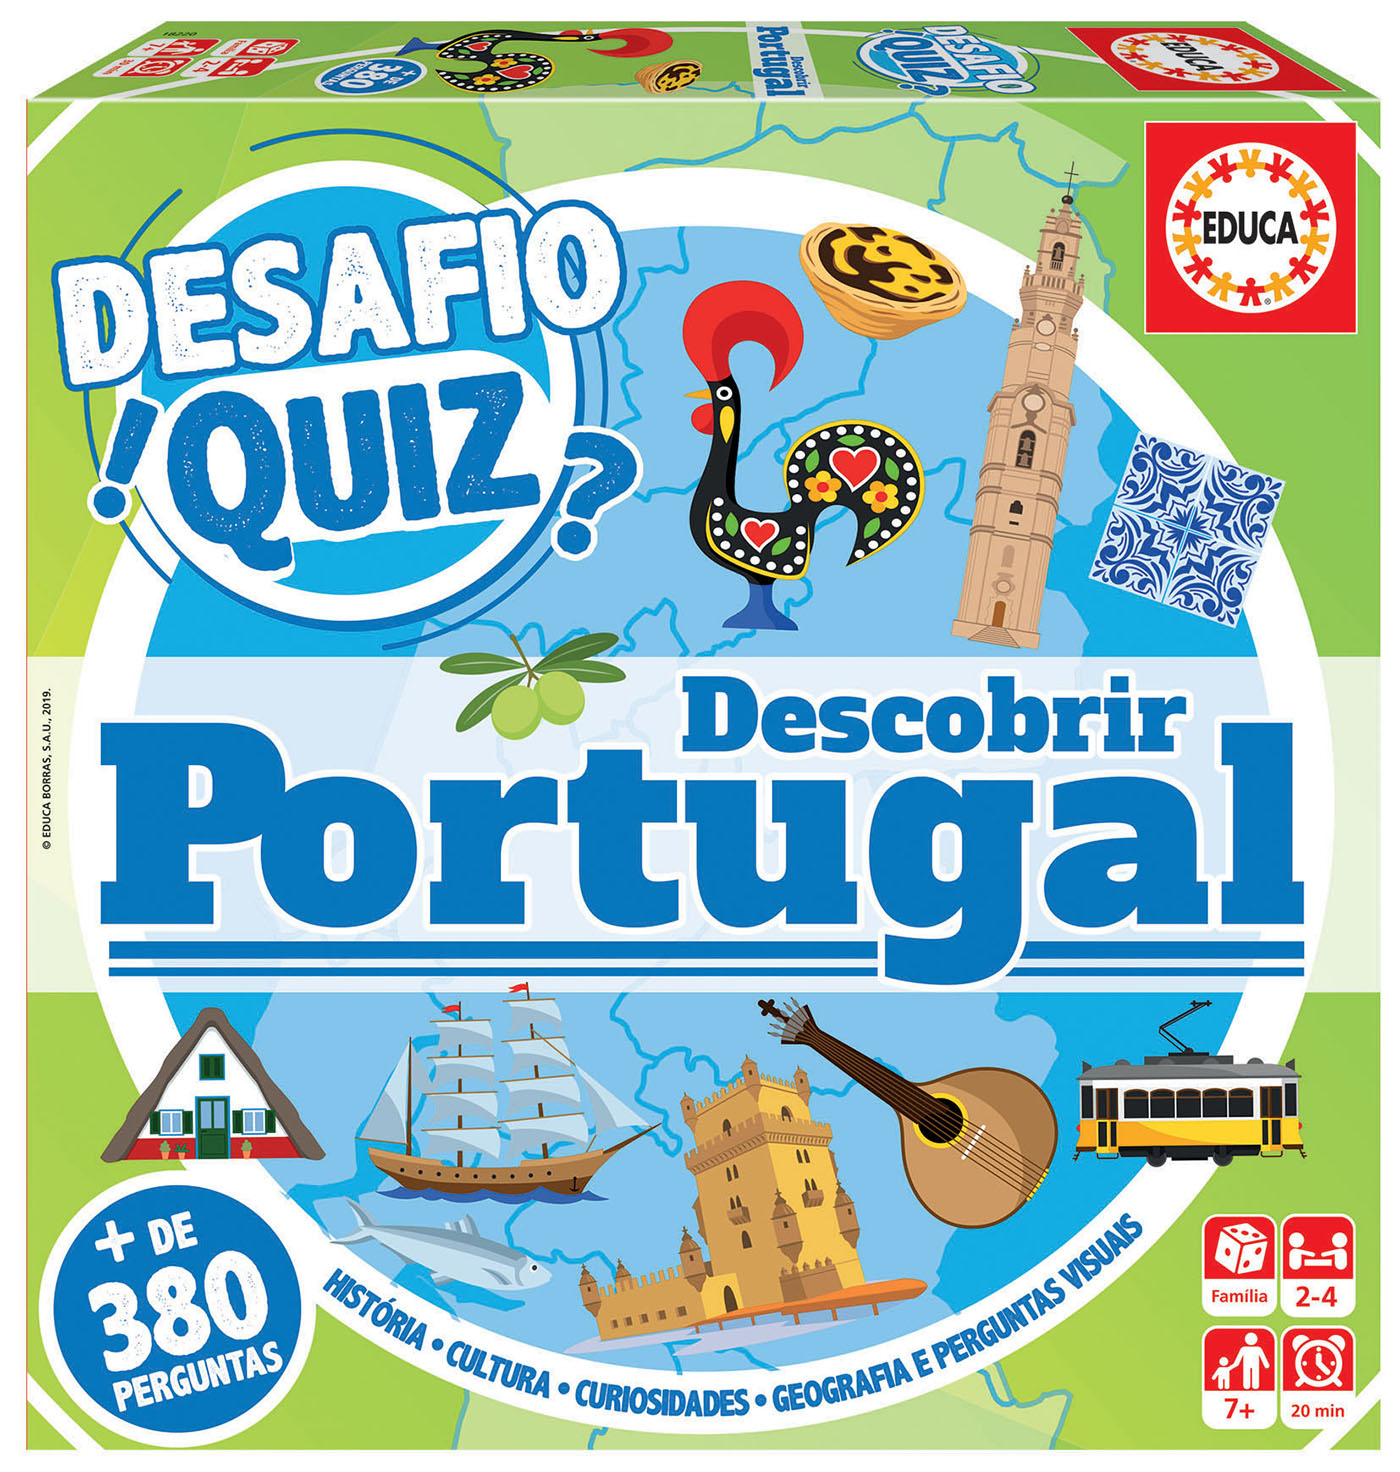 Conhecer Portugal: o jogo que é uma autêntica viagem! 